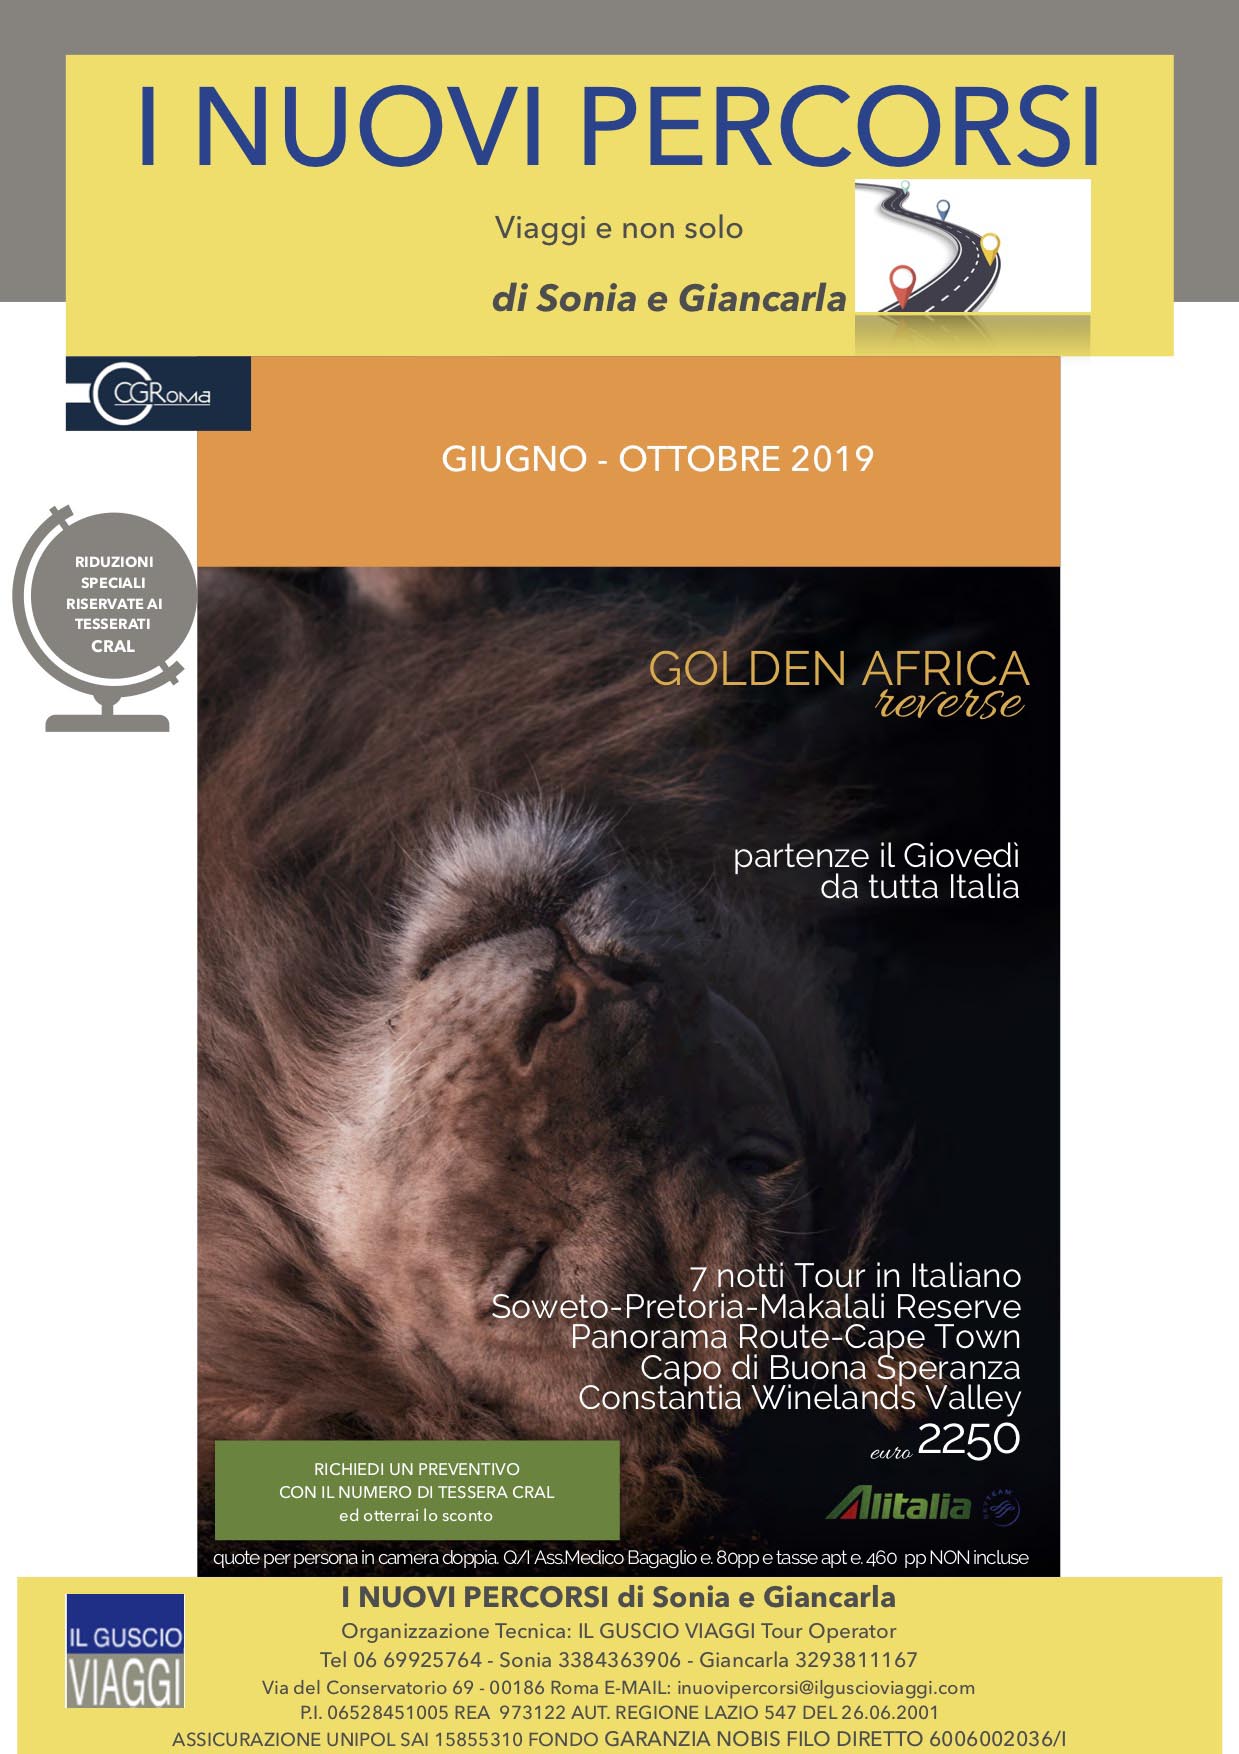 SUD AFRICA GIUGNO OTTOBRE 2019 CRAL CIGIRO